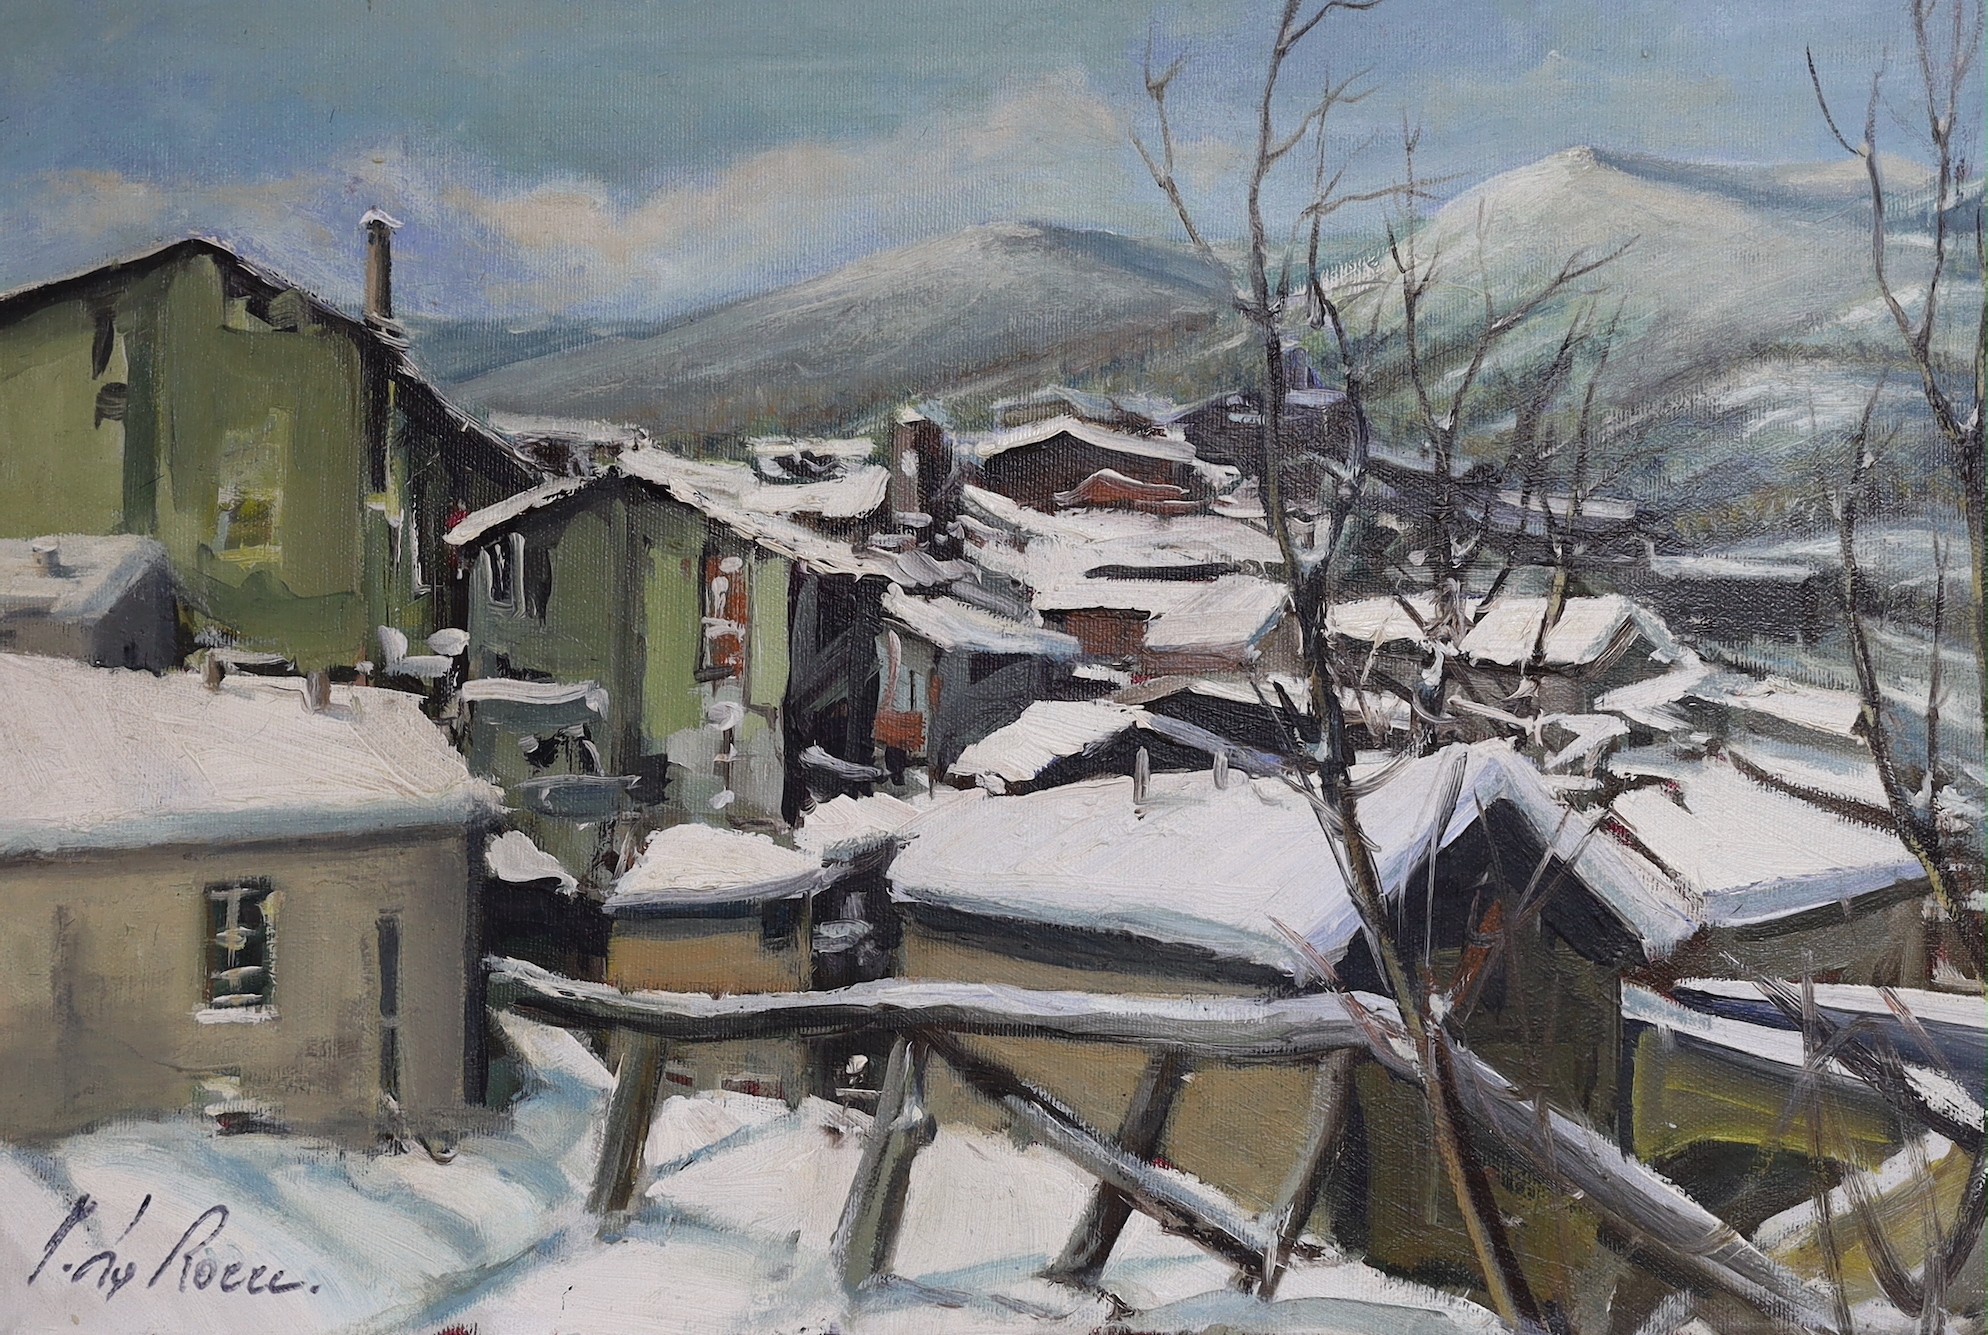 J. La Rocce, oil on canvas, Alpine town in winter, signed, 40 x 60cm, unframed